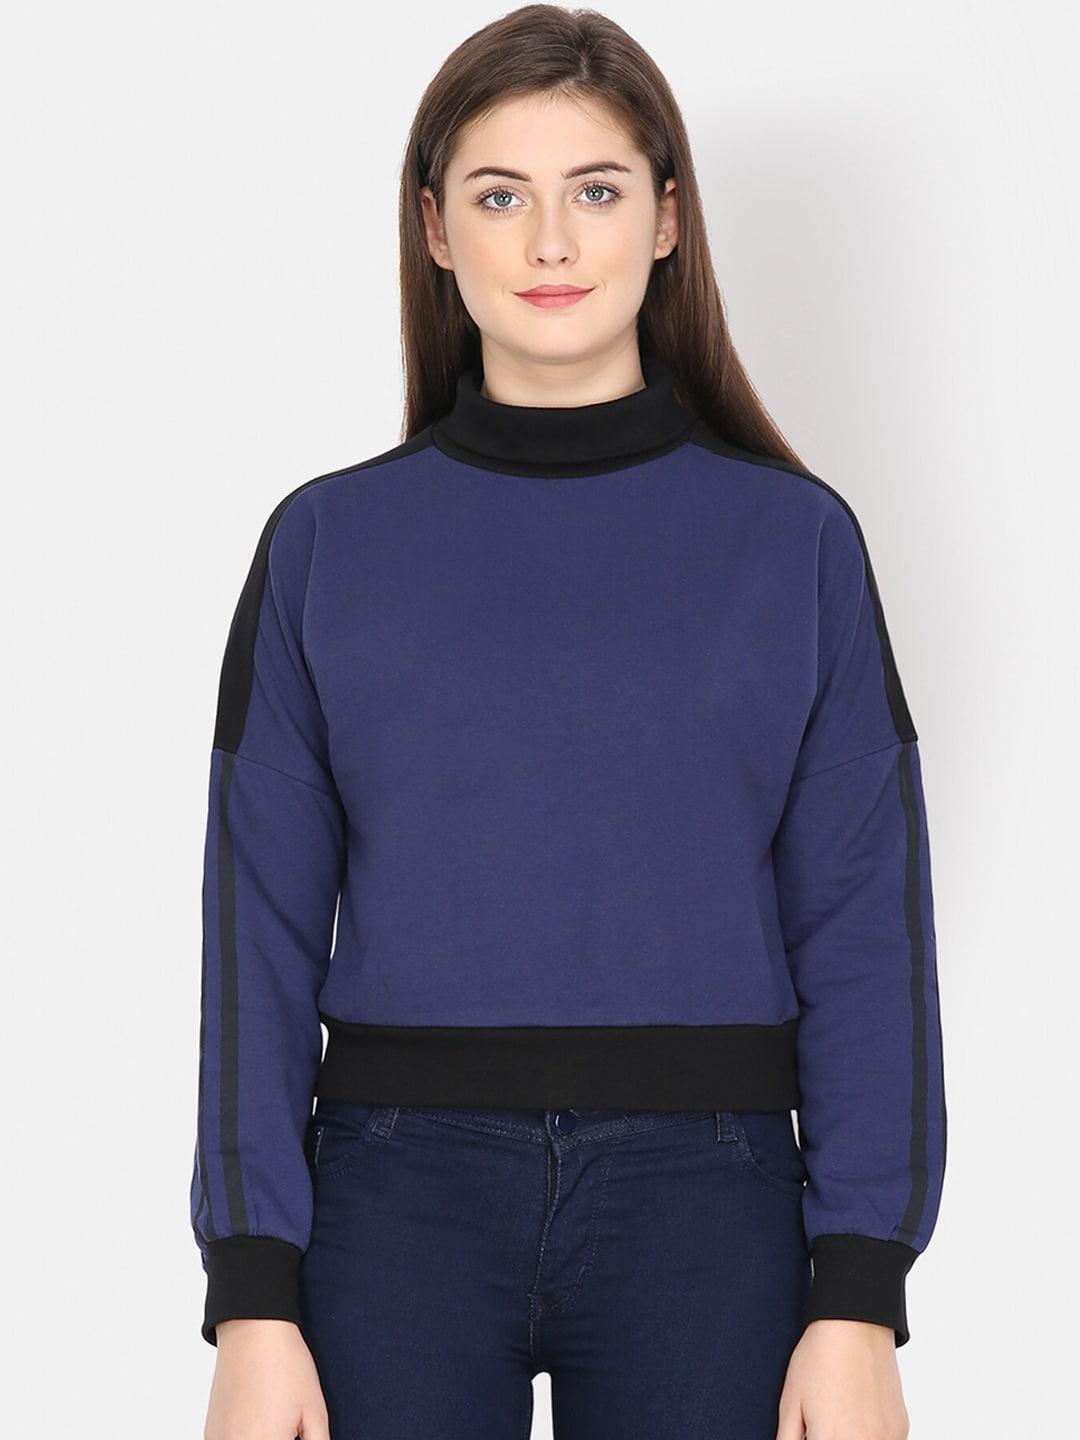 yaadleen-women-navy-blue-sweatshirt